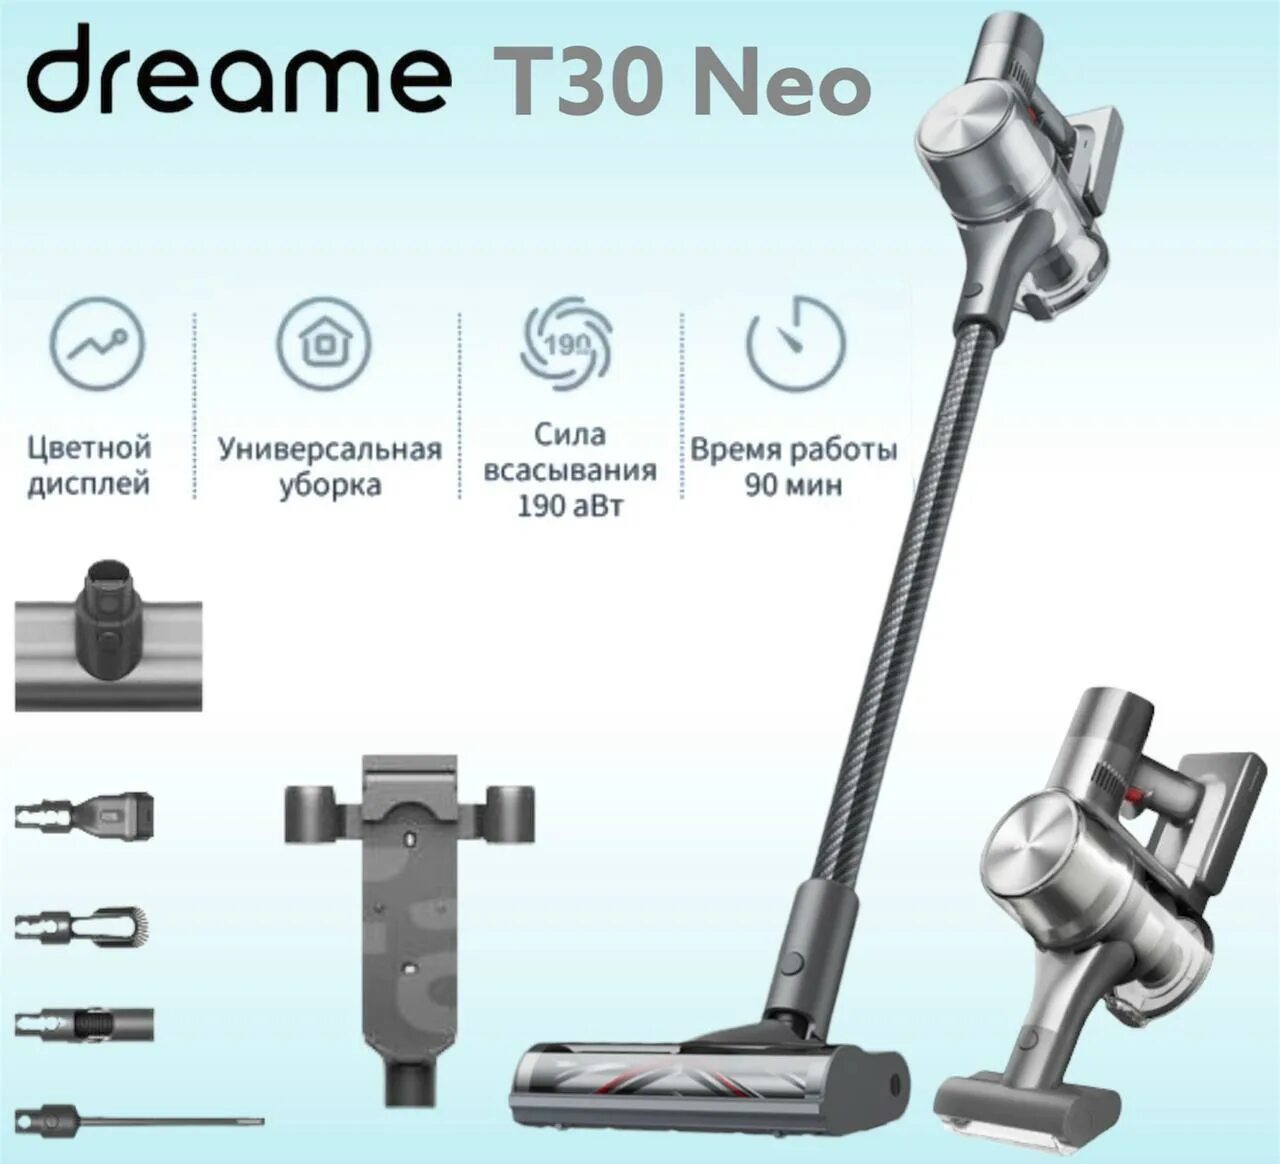 Dreame h13 pro. Пылесос Dreame t30. Беспроводной вертикальный пылесос Xiaomi Dreame t30. Dreame t30 Neo. Пылесос Dreame t30 Neo.